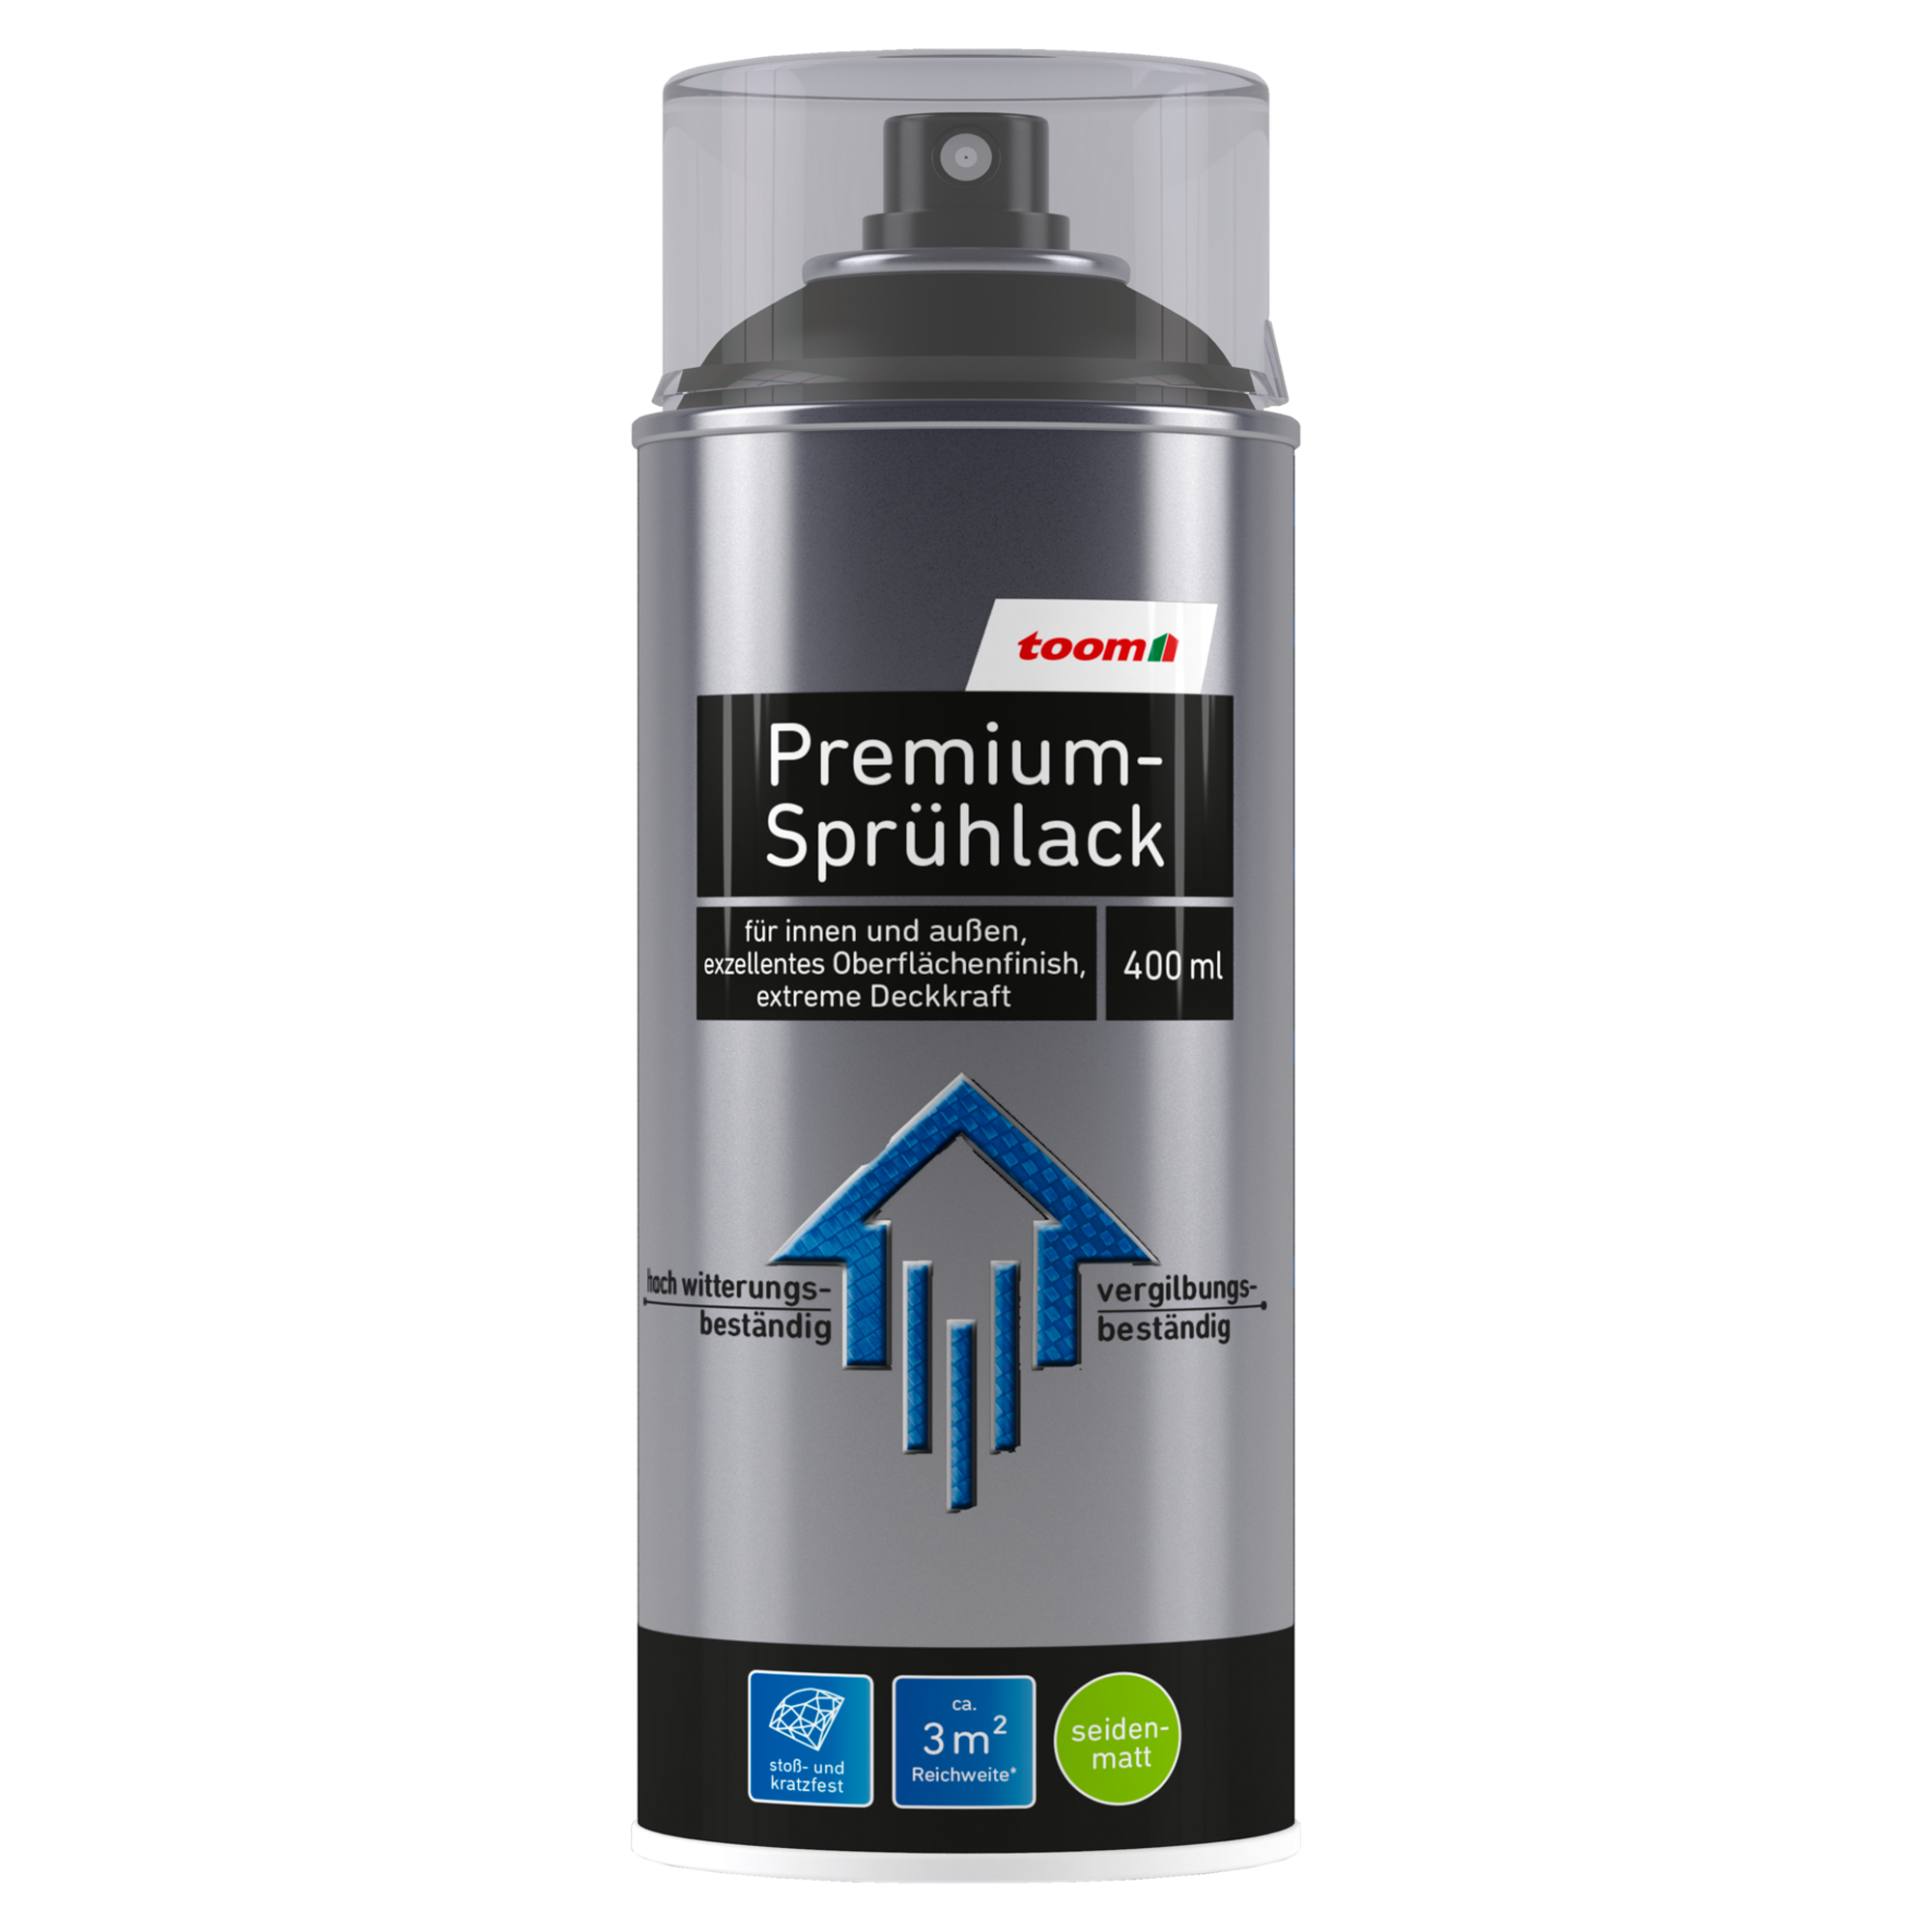 Premium-Sprühlack schwarz seidenmatt 400 ml + product picture